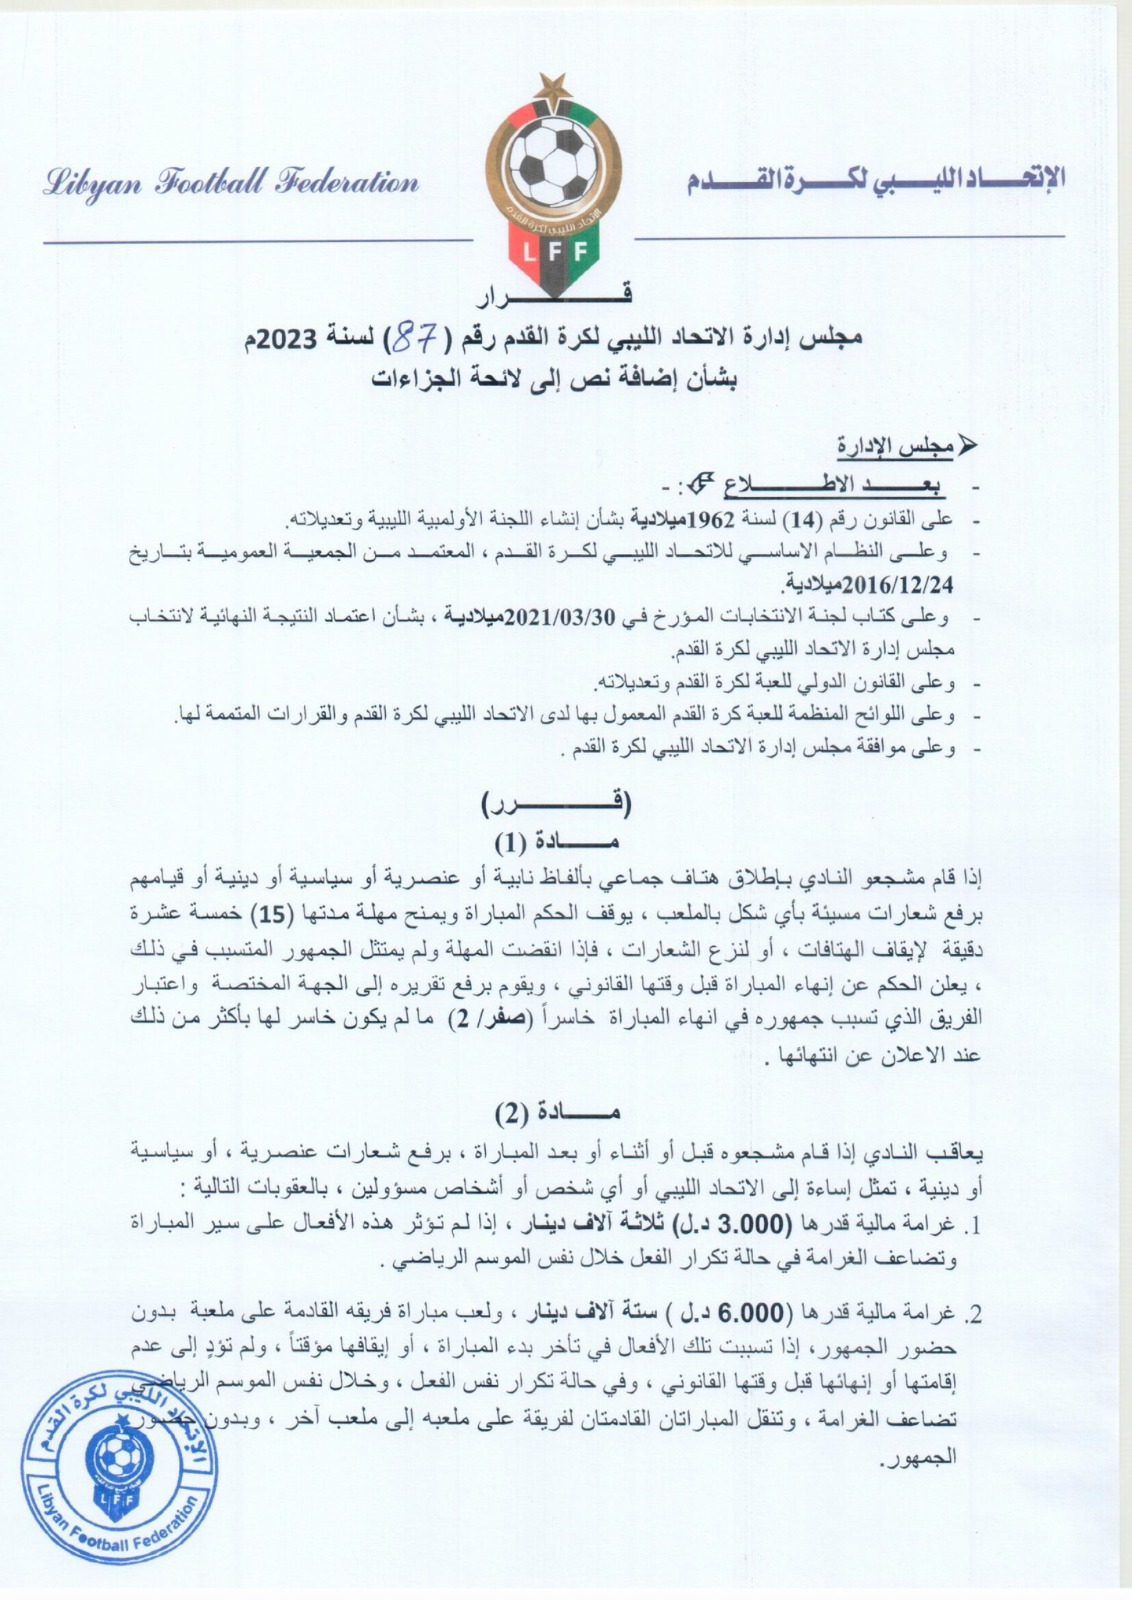 الاتحاد الليبي لكرة القدم يضيف نصا إلى لائحة الجزاءات